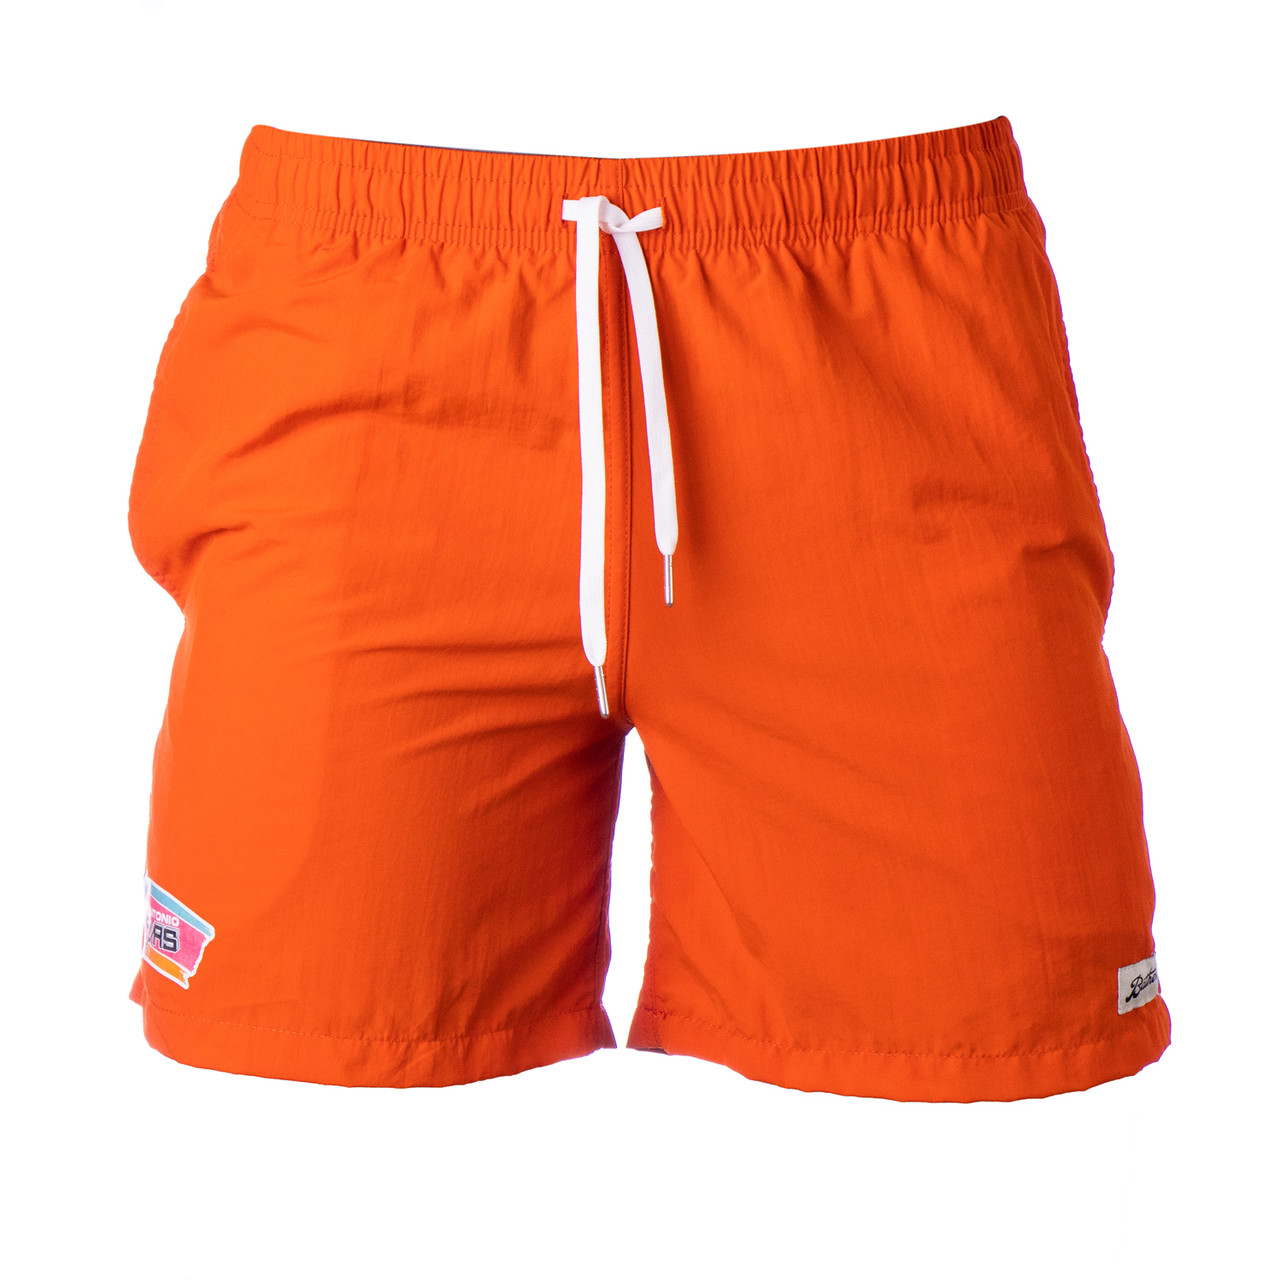 San Antonio Spurs Men's Bather Swim Shorts - Orange - The Official ...